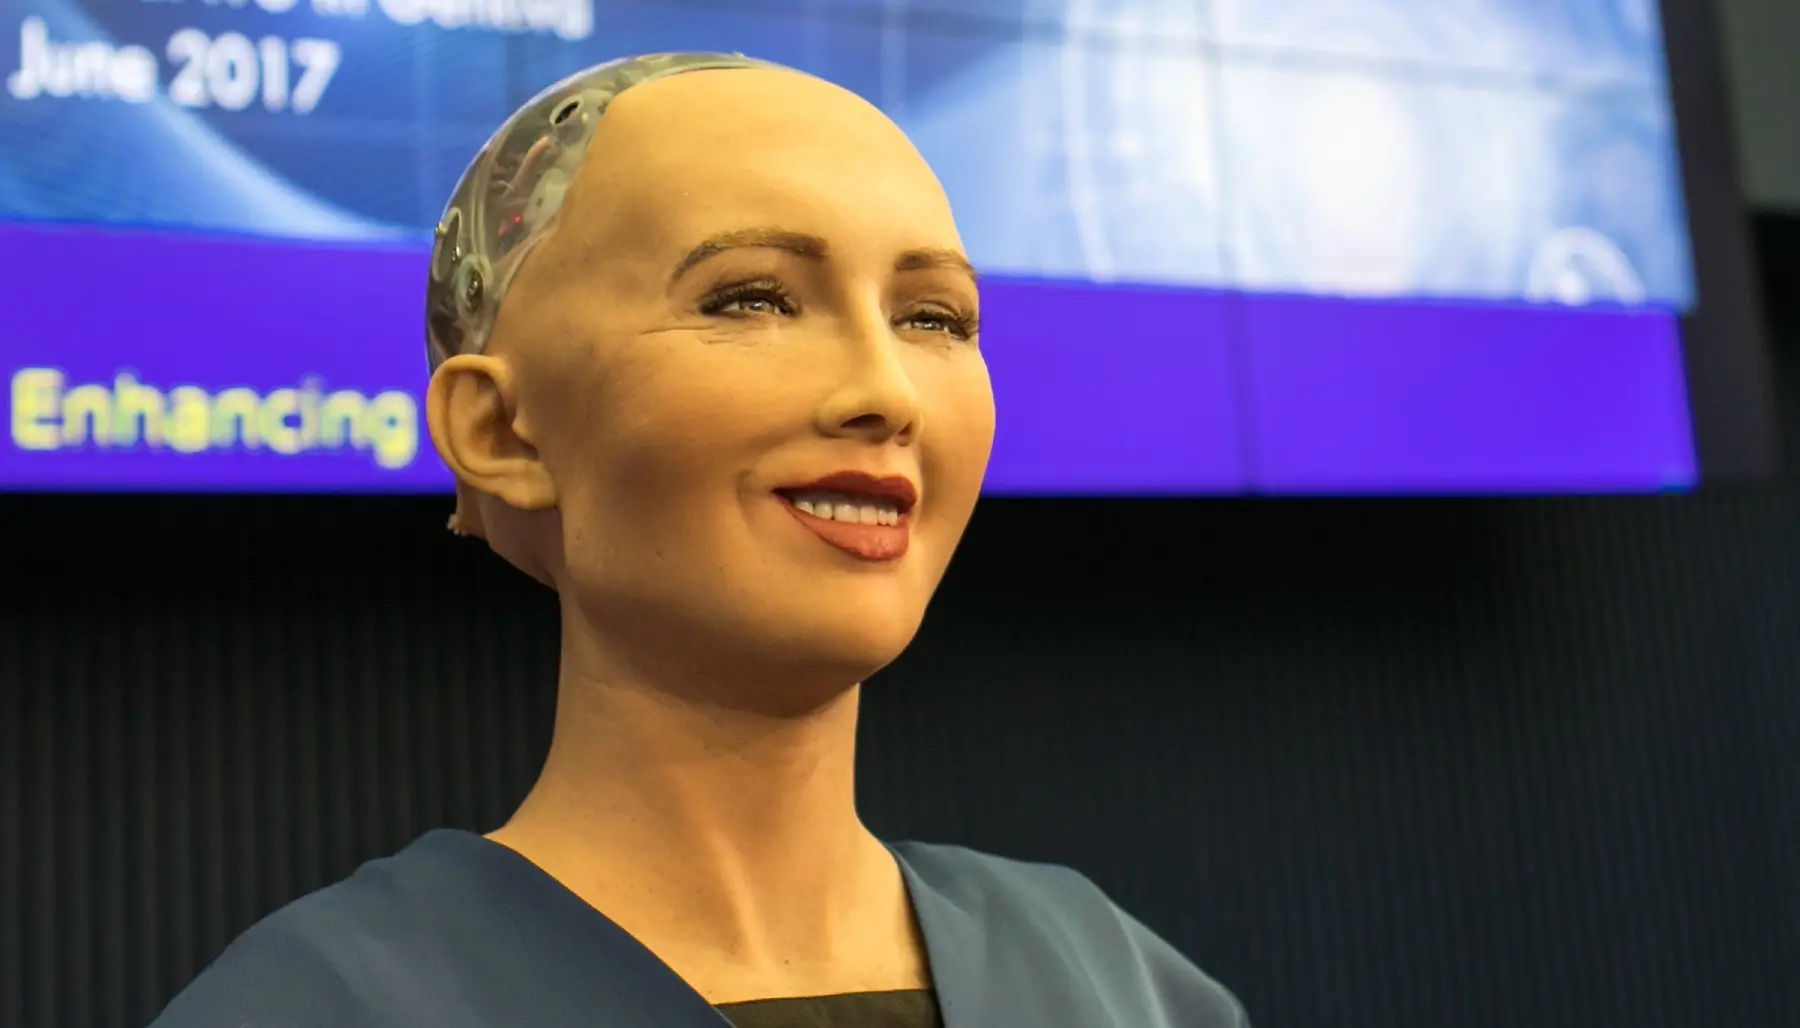 Robot humanoide sonriendo en una conferencia.